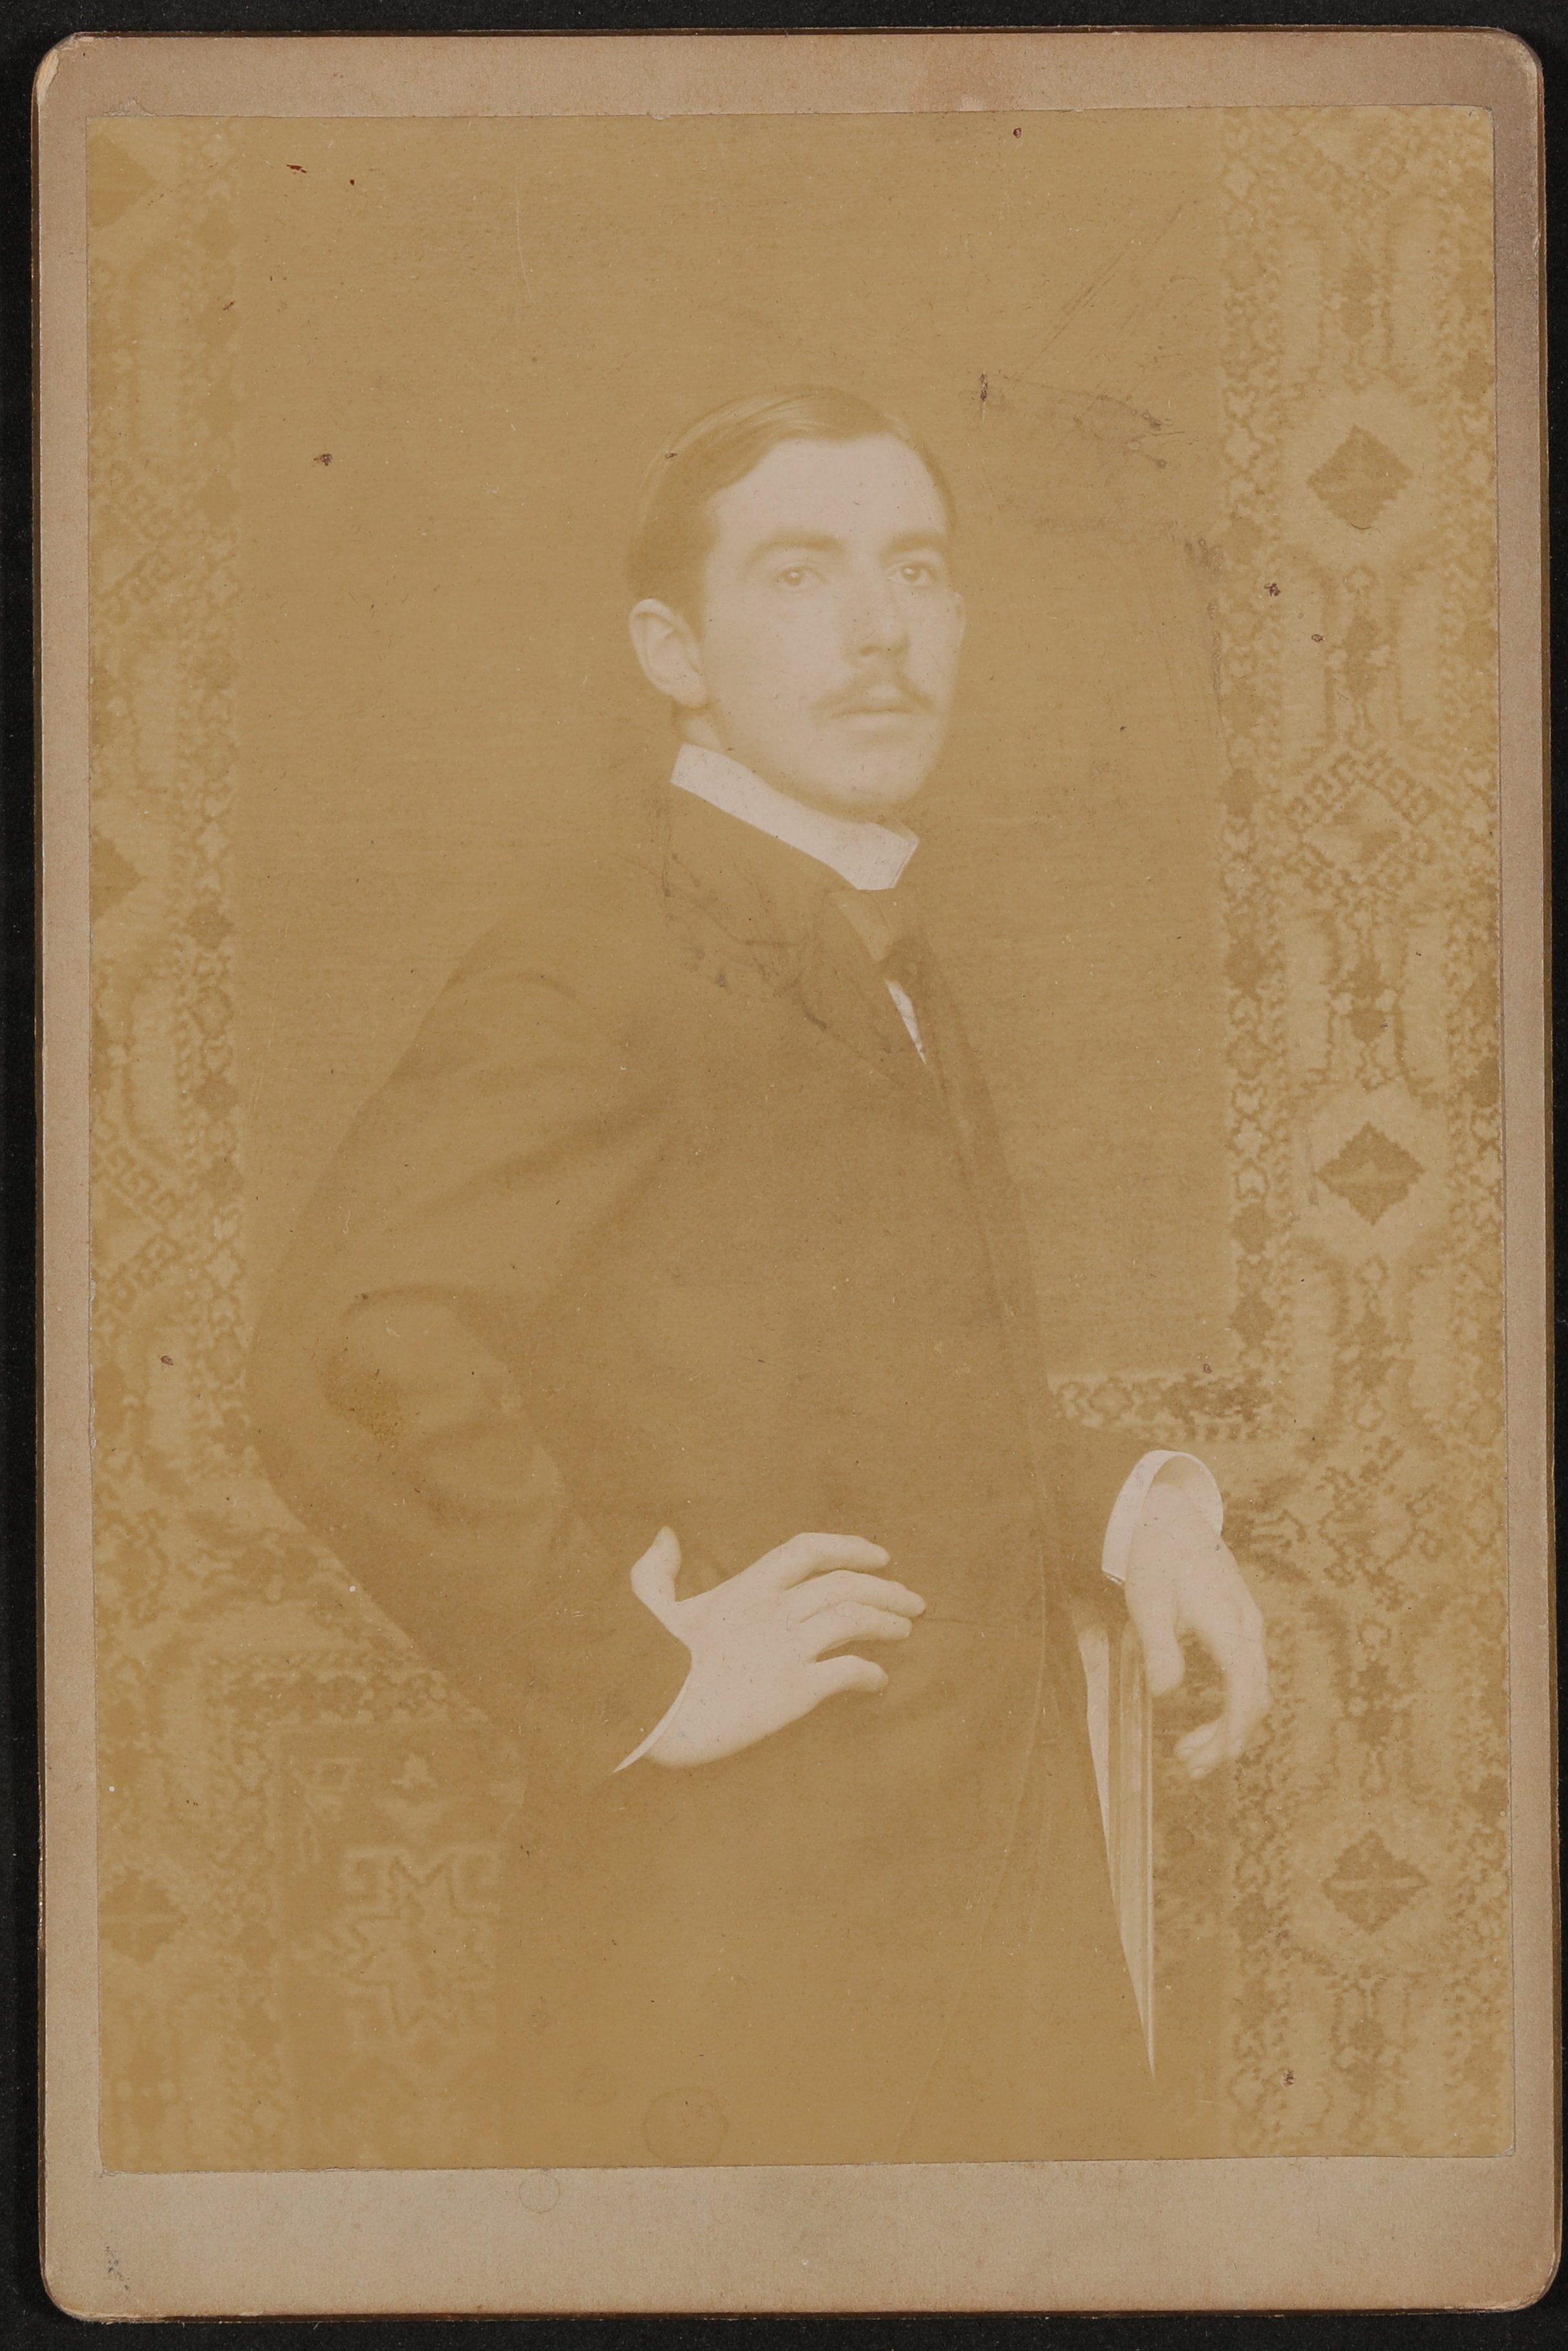 Portrait eines jungen Mannes mit Schnauzbart, stehend, mit Arm in die Hüfte gestemmt. (Freies Deutsches Hochstift / Frankfurter Goethe-Museum CC BY-NC-SA)